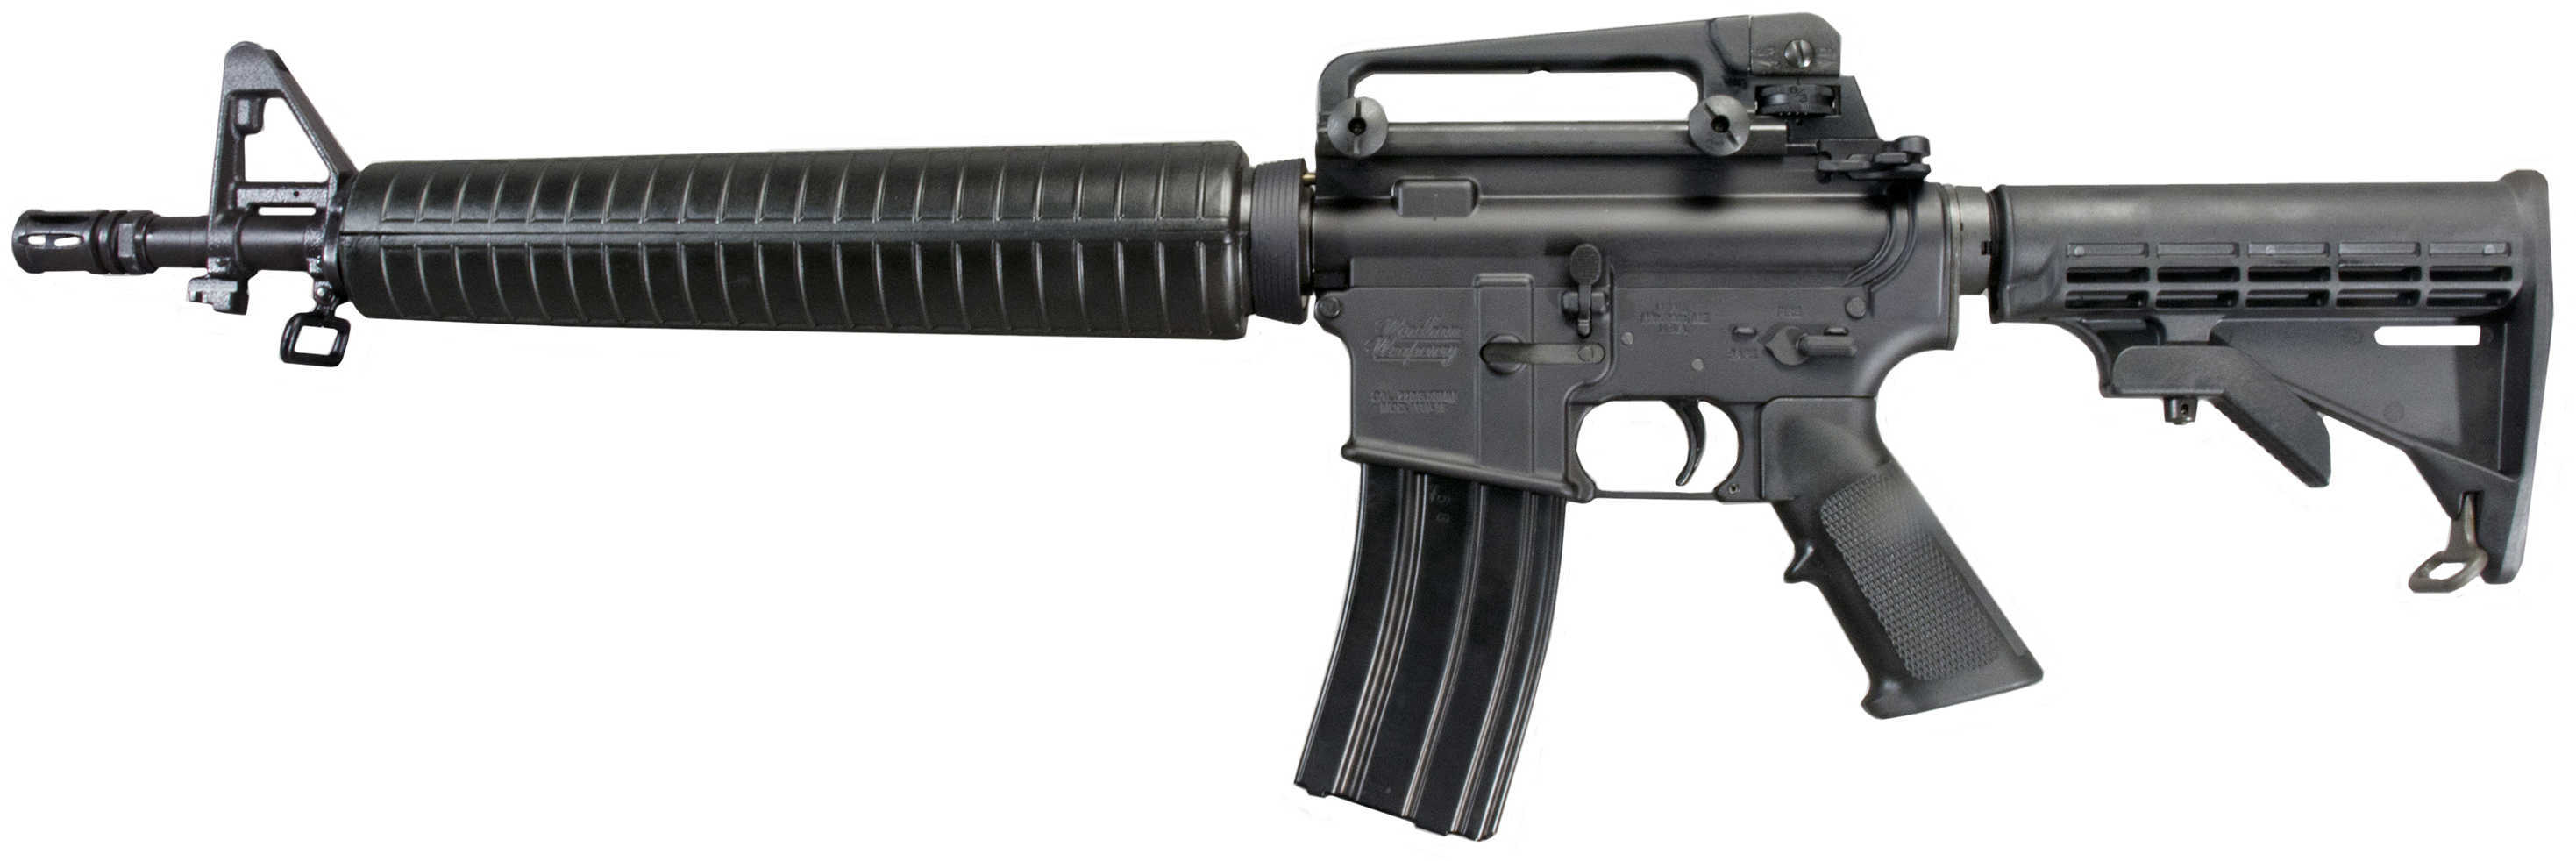 Windham Weaponry M4 Dissipator Semi-Auto Rifle 223 Remington 16" Barrel 30+1 Rounds 6 Positon Stock Black R16M4DA4T